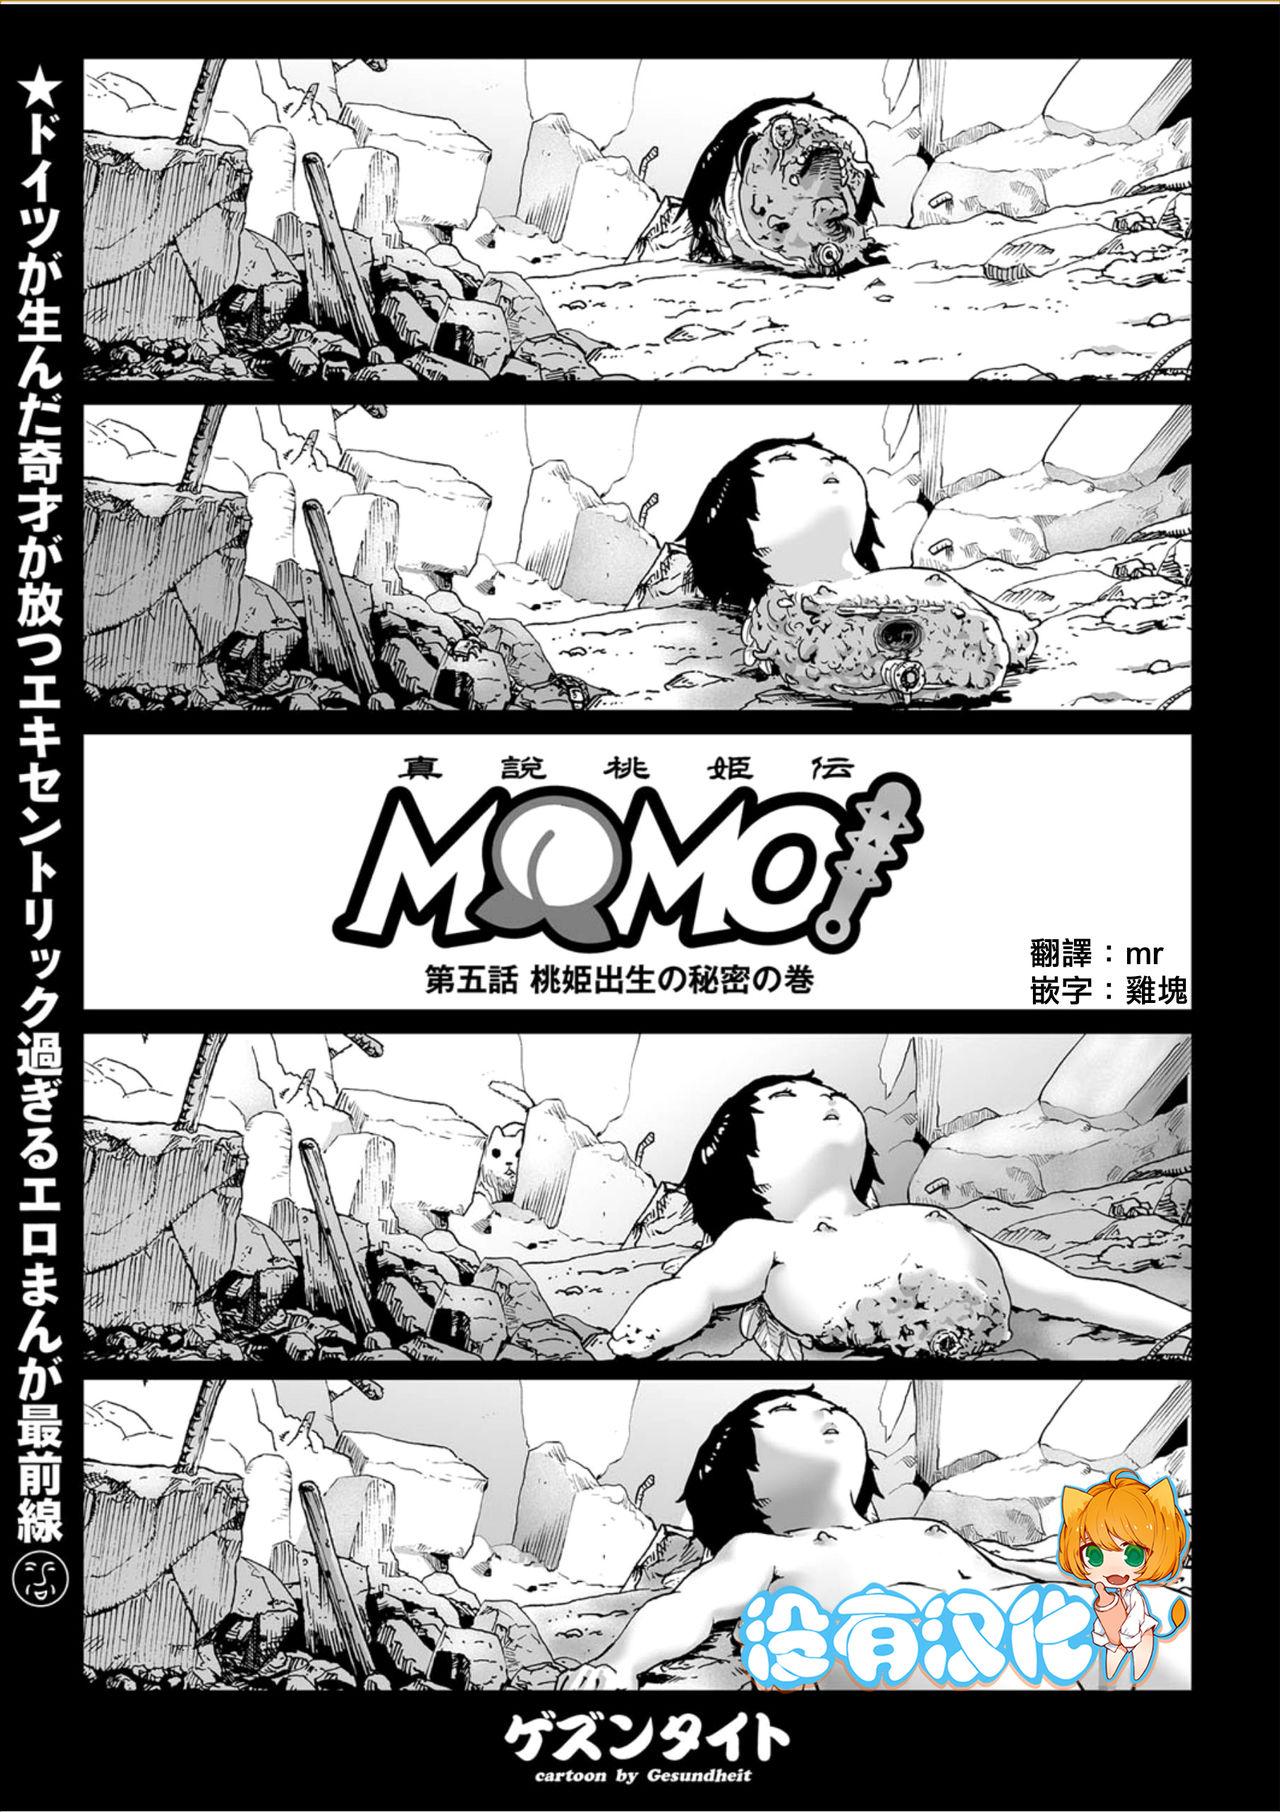 MOMO! Daigowa Momoki Shussei no Himitsu no Maki 0